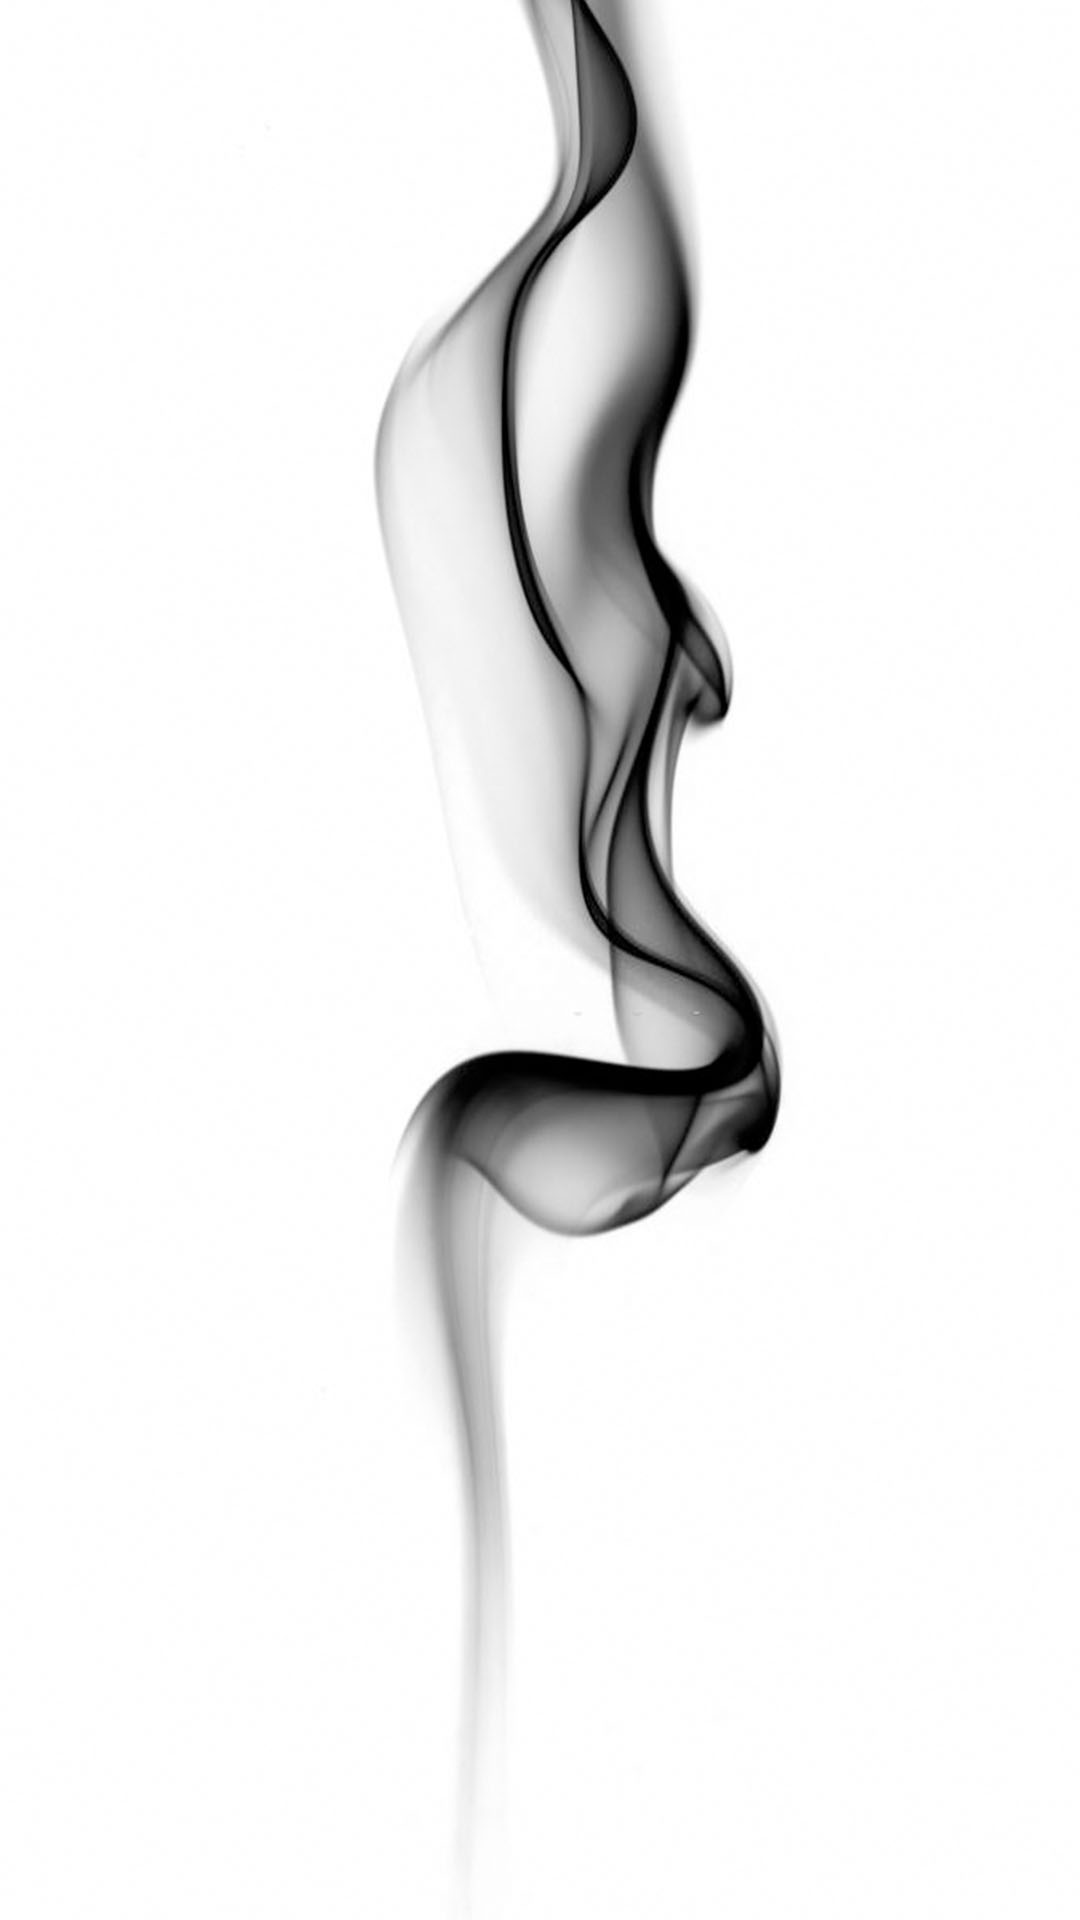 Hình nền xám khói đơn giản